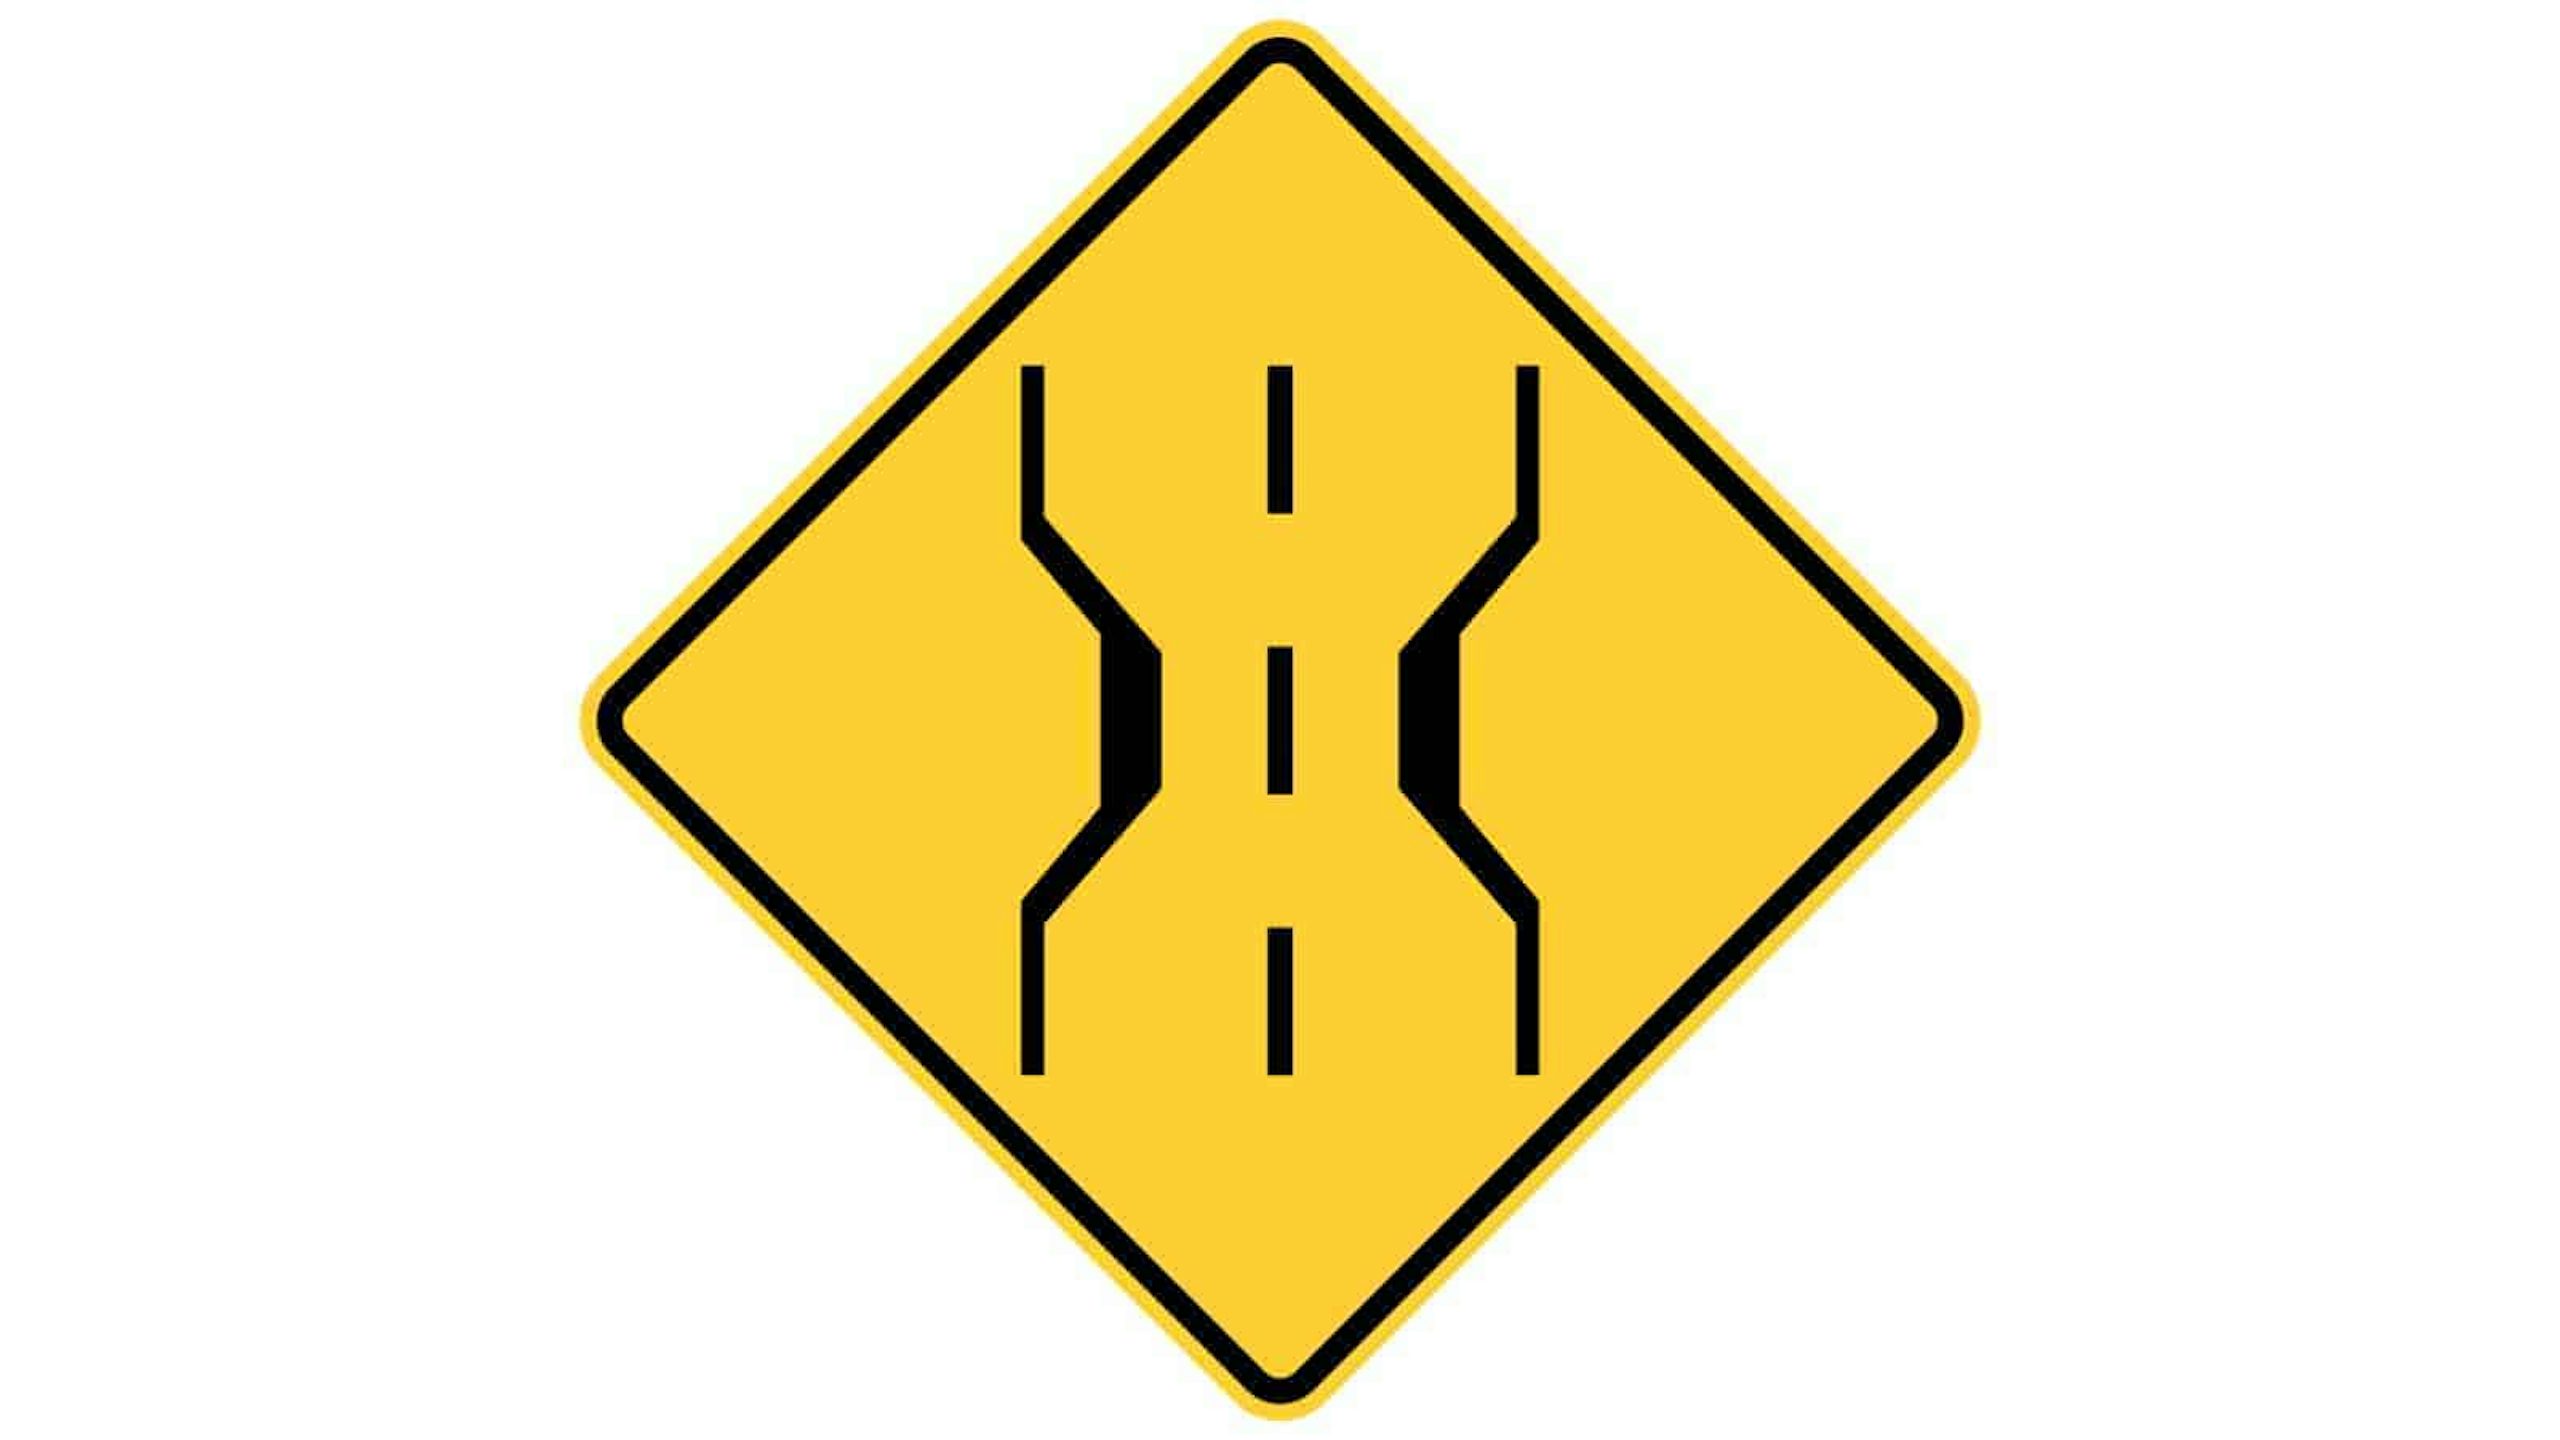 Warning sign narrow bridge ahead